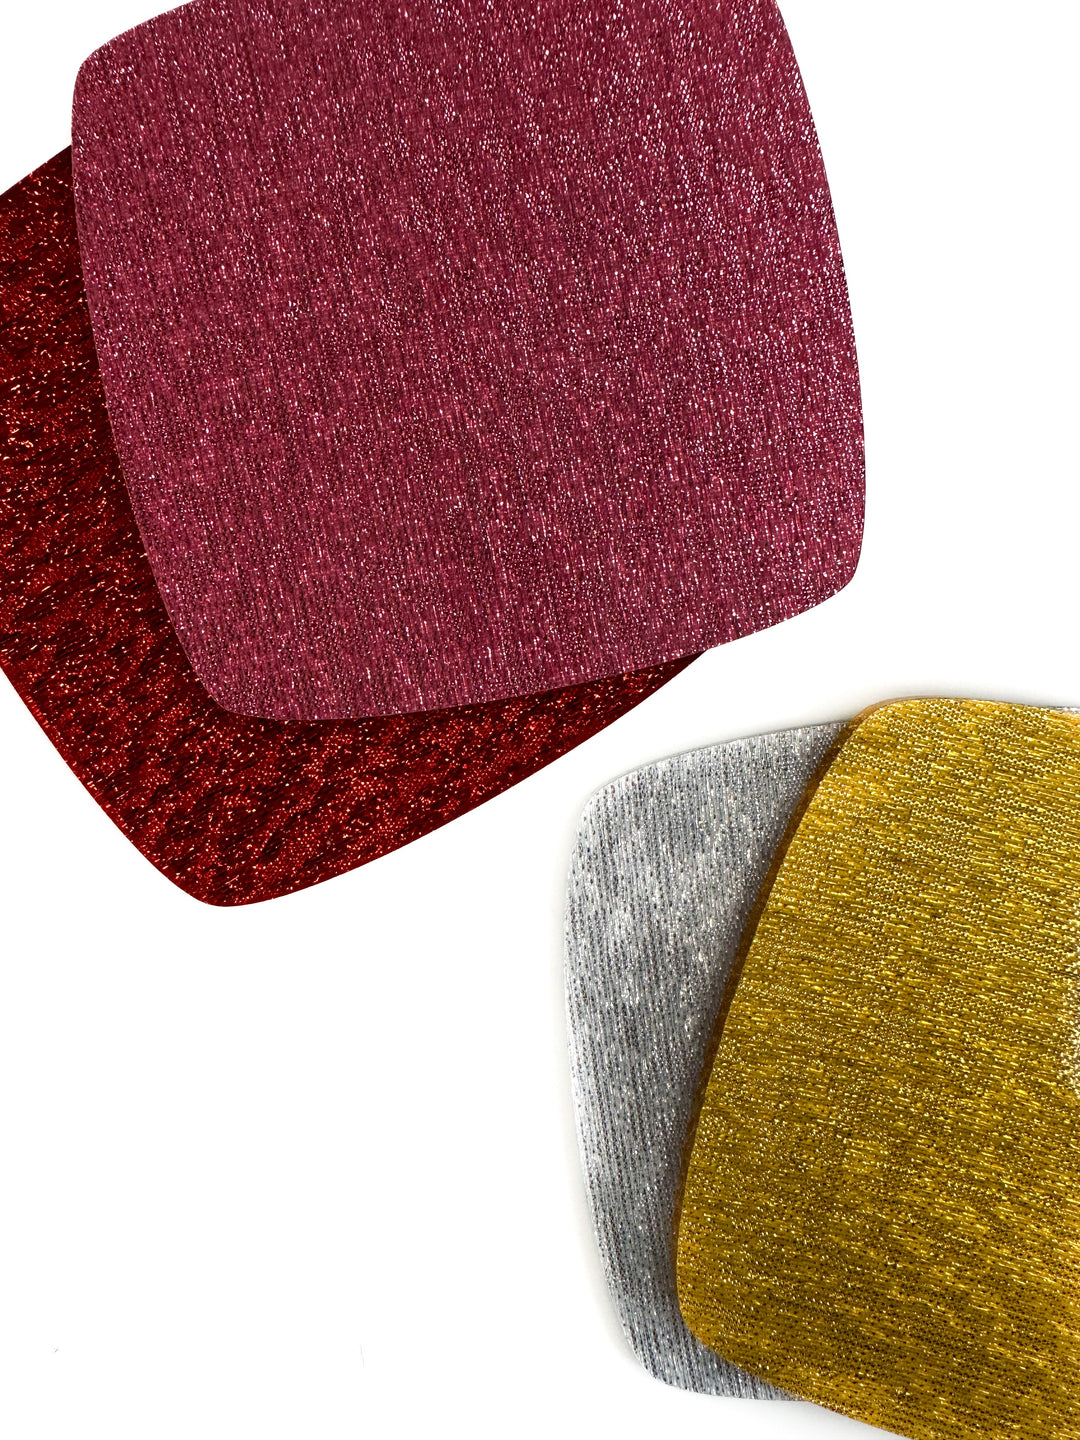 Fabric Shimmer - Custom Made Better